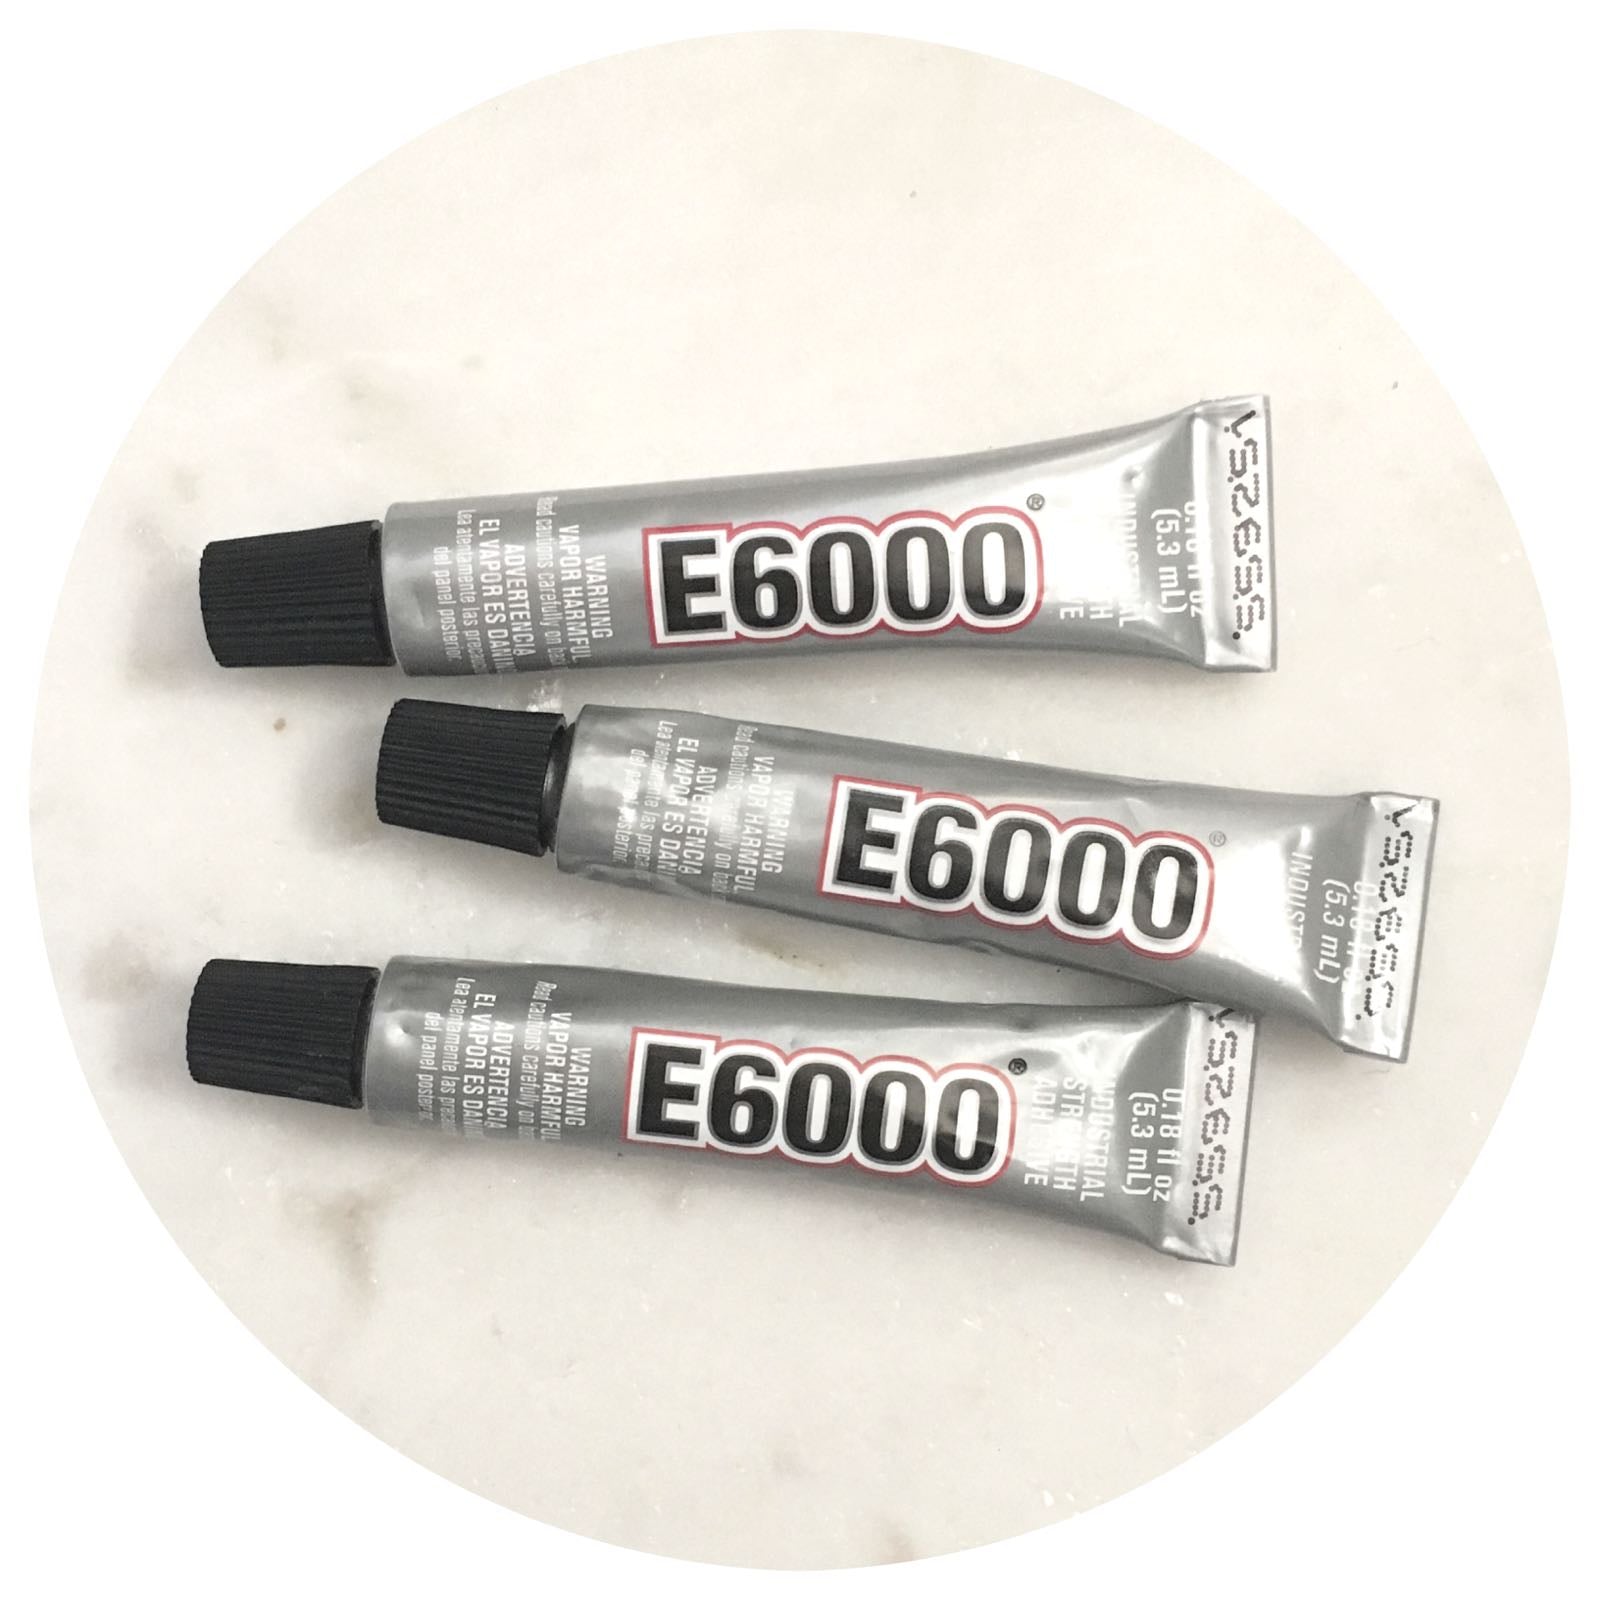 E6000 Glue Adhesive - 7.2g - Each